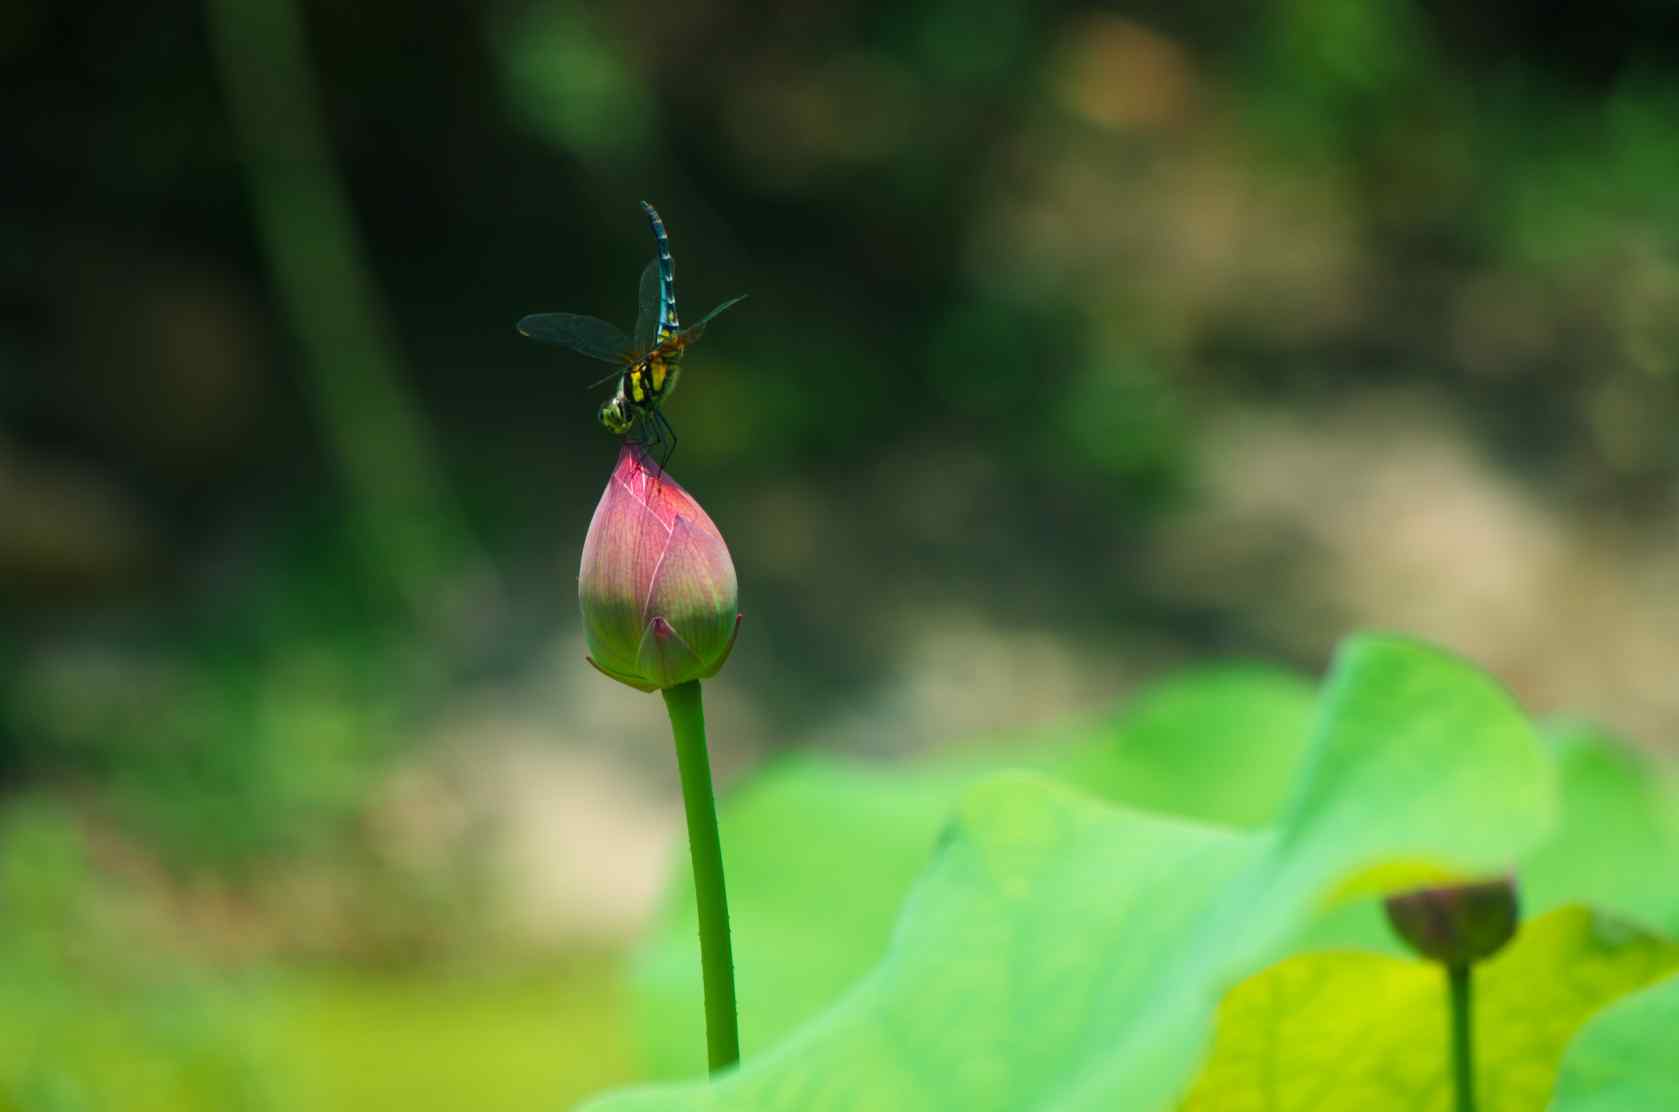 荷花和蜻蜓 库存照片. 图片 包括有 绽放, 百合, 紫色, 蜻蜓, 的百威, 开花, 卡罗来纳州, 叶子 - 53644046